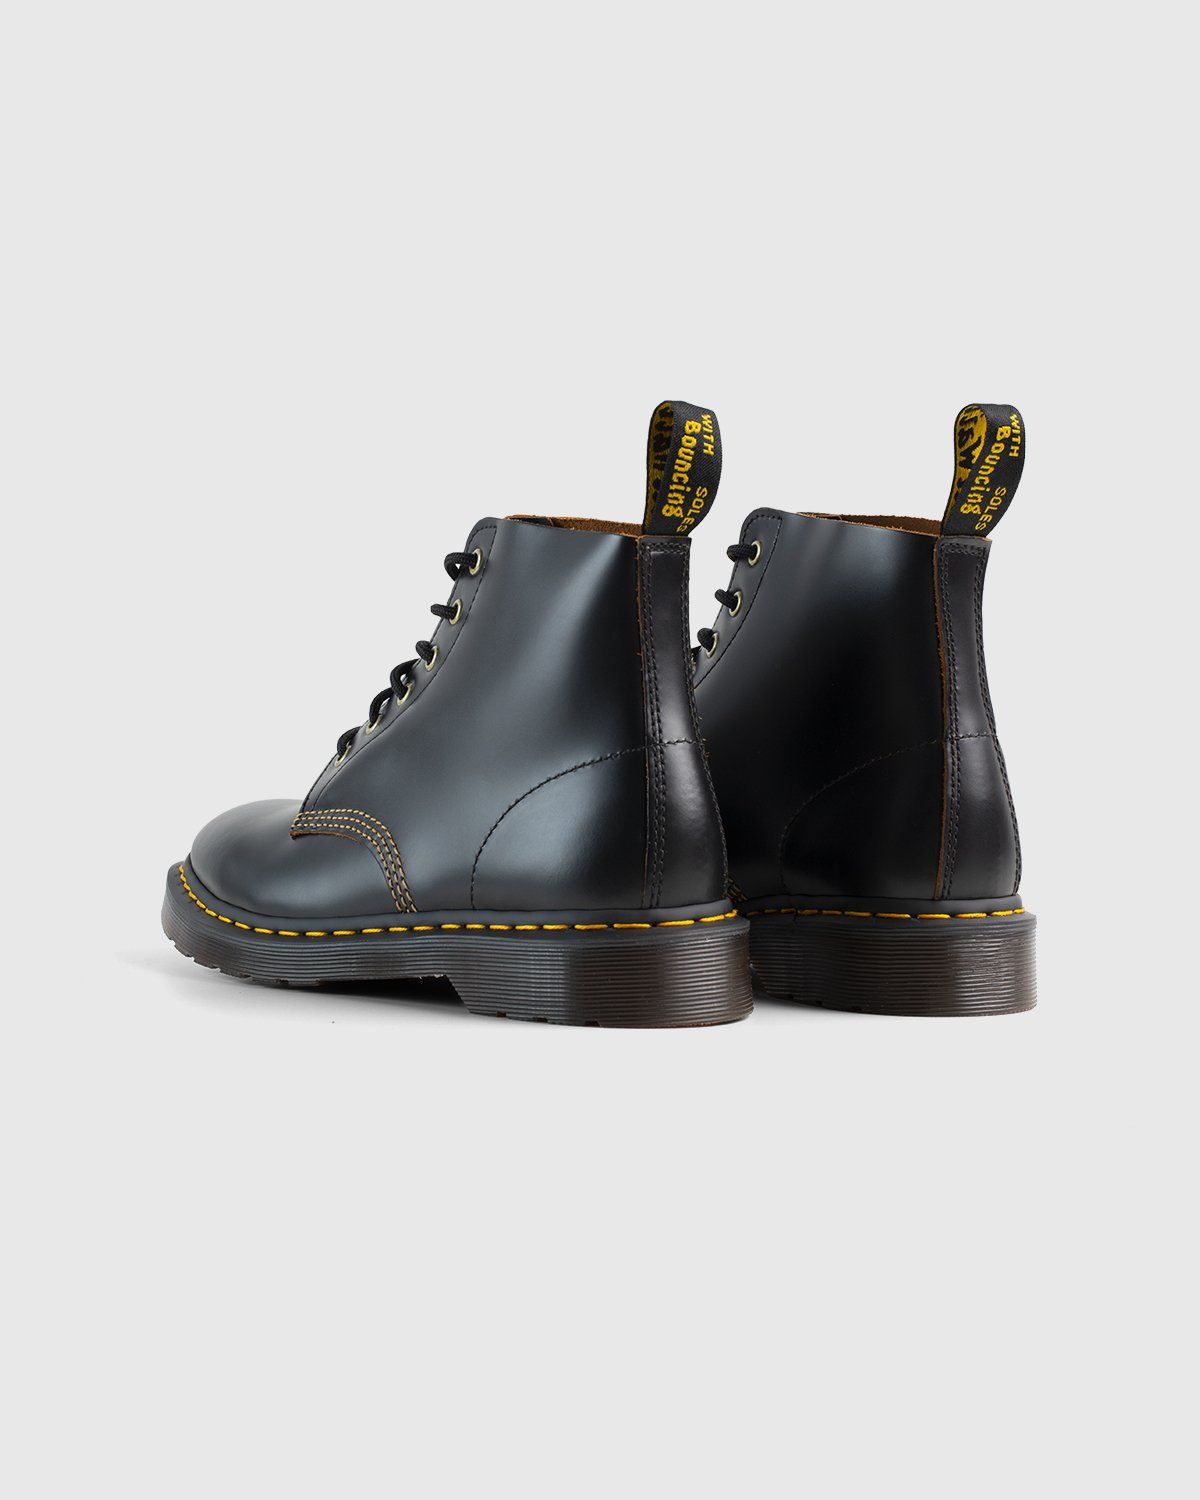 Dr. Martens – 101 Arc Black Vintage Smooth - Boots - Black - Image 4